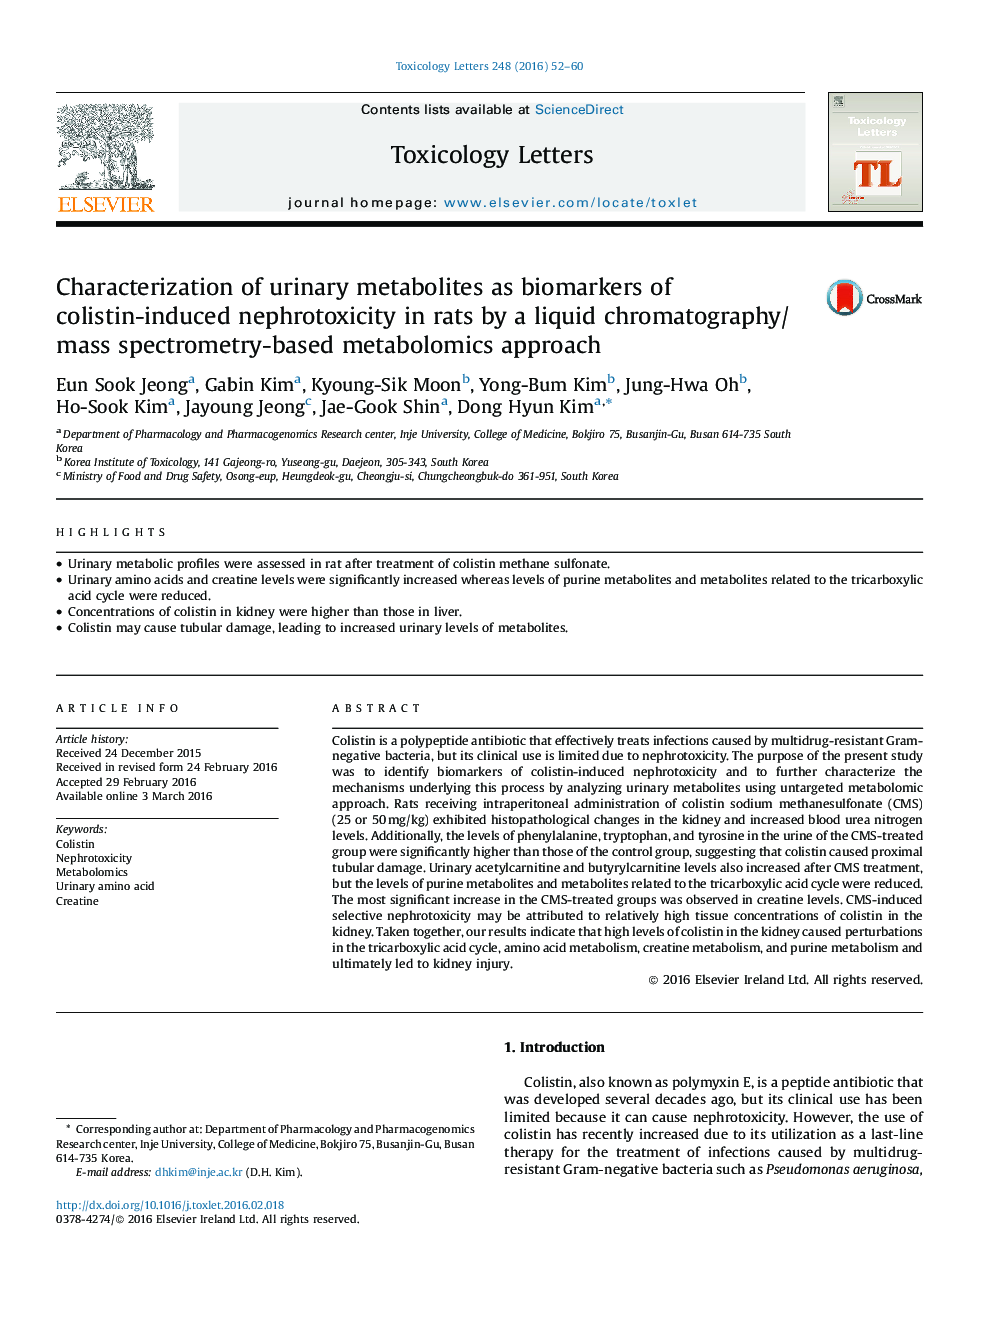 تشخیص متابولیت های ادرار به عنوان نشانگرهای بیولوژیک نفروتوکسی سمی ناشی از کولیستین در موش های صحرایی به روش متابولومویک مبتنی بر کروماتوگرافی مایع / طیف سنج جرمی 